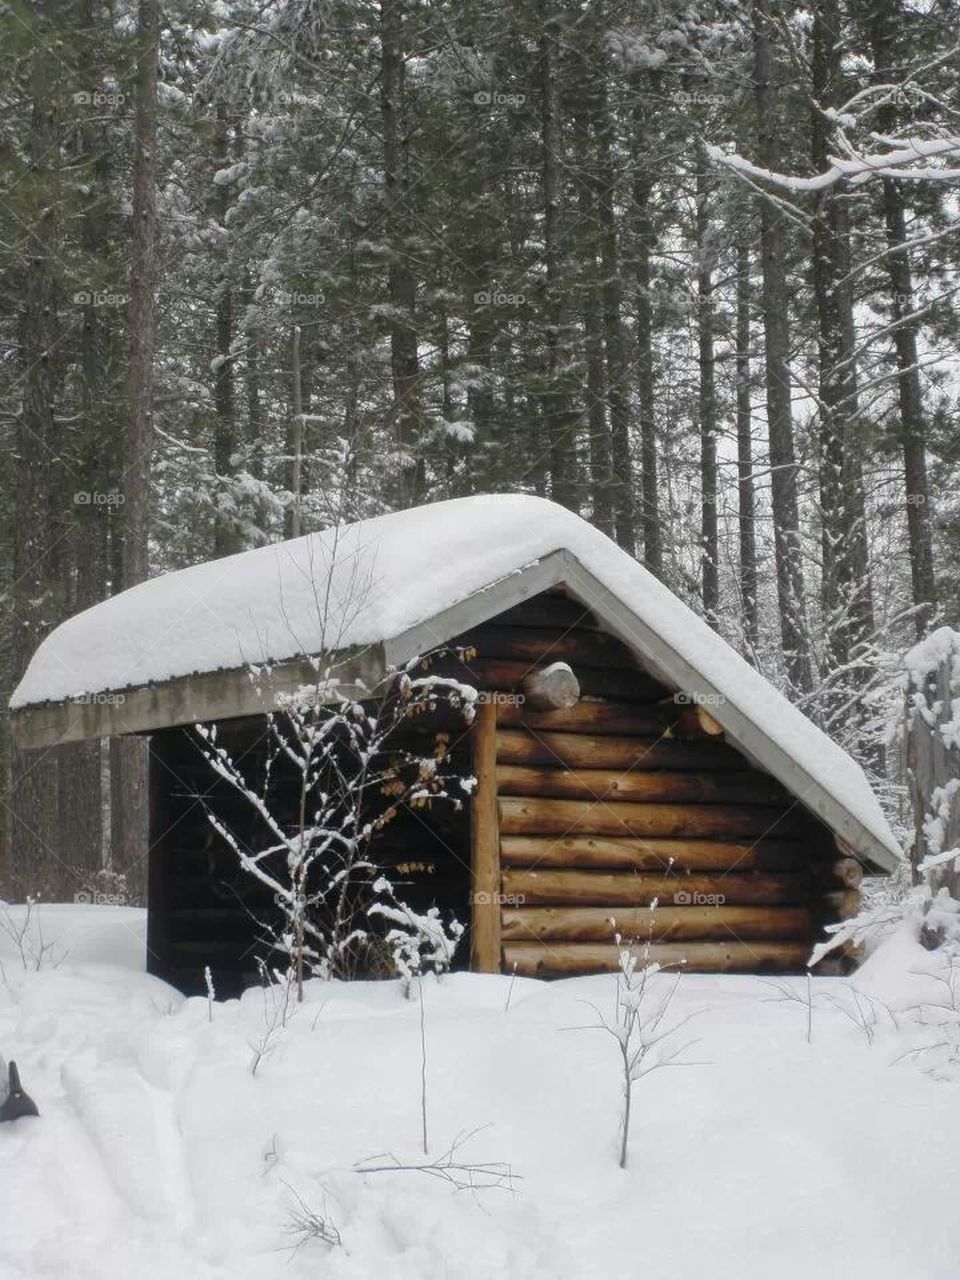 Winter shelter